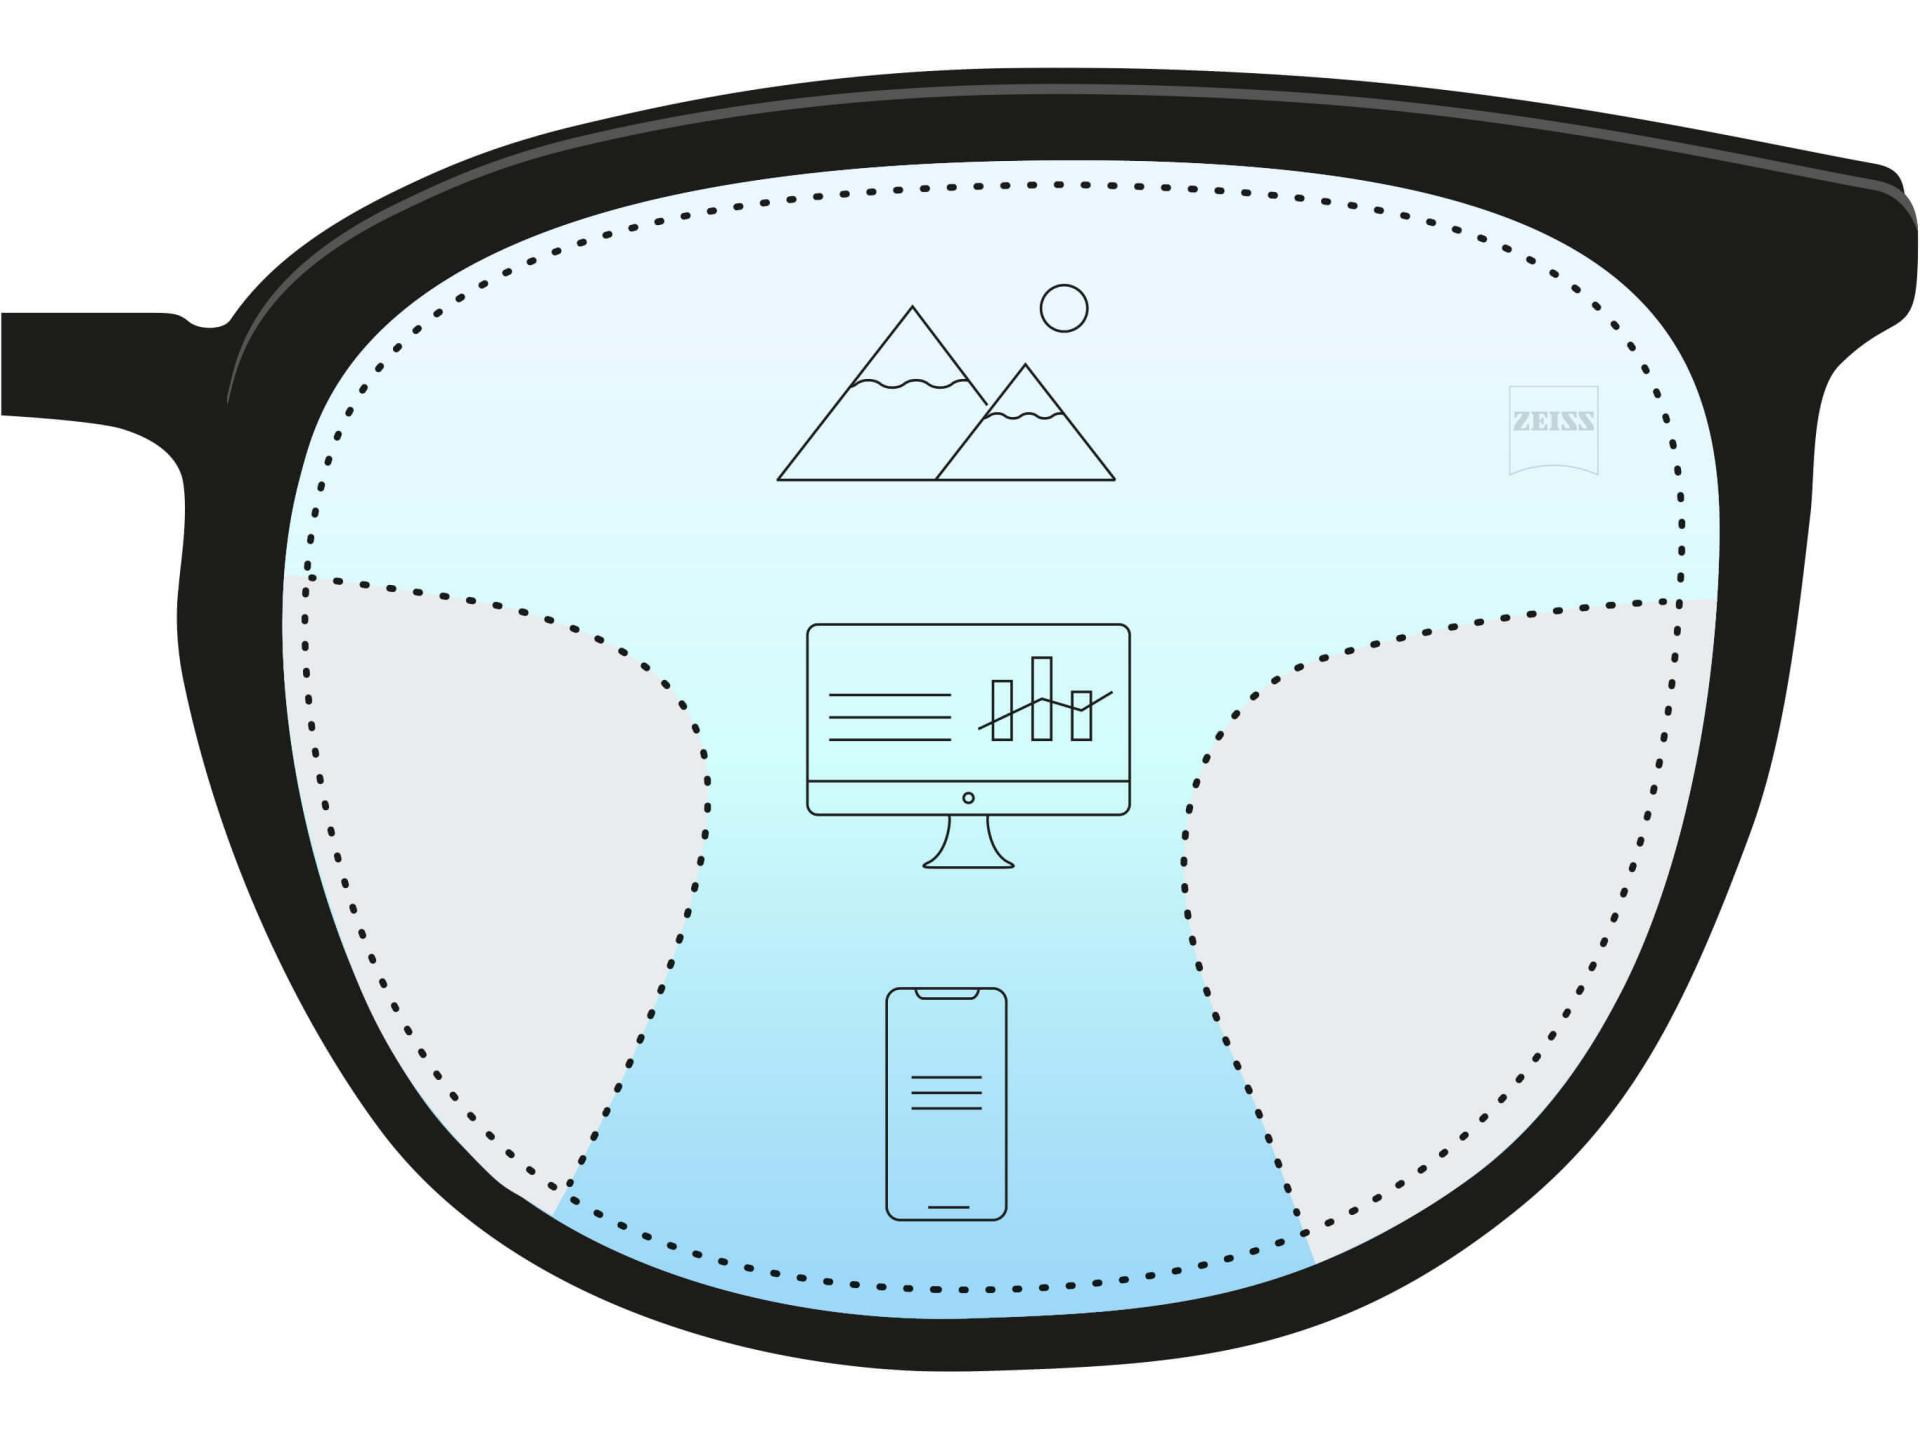 En illustration af et progressive brilleglas med tre forskellige zoner. Tre ikoner og farveovergang viser tre styrker til forskellige afstande - nær, mellem og fjern.